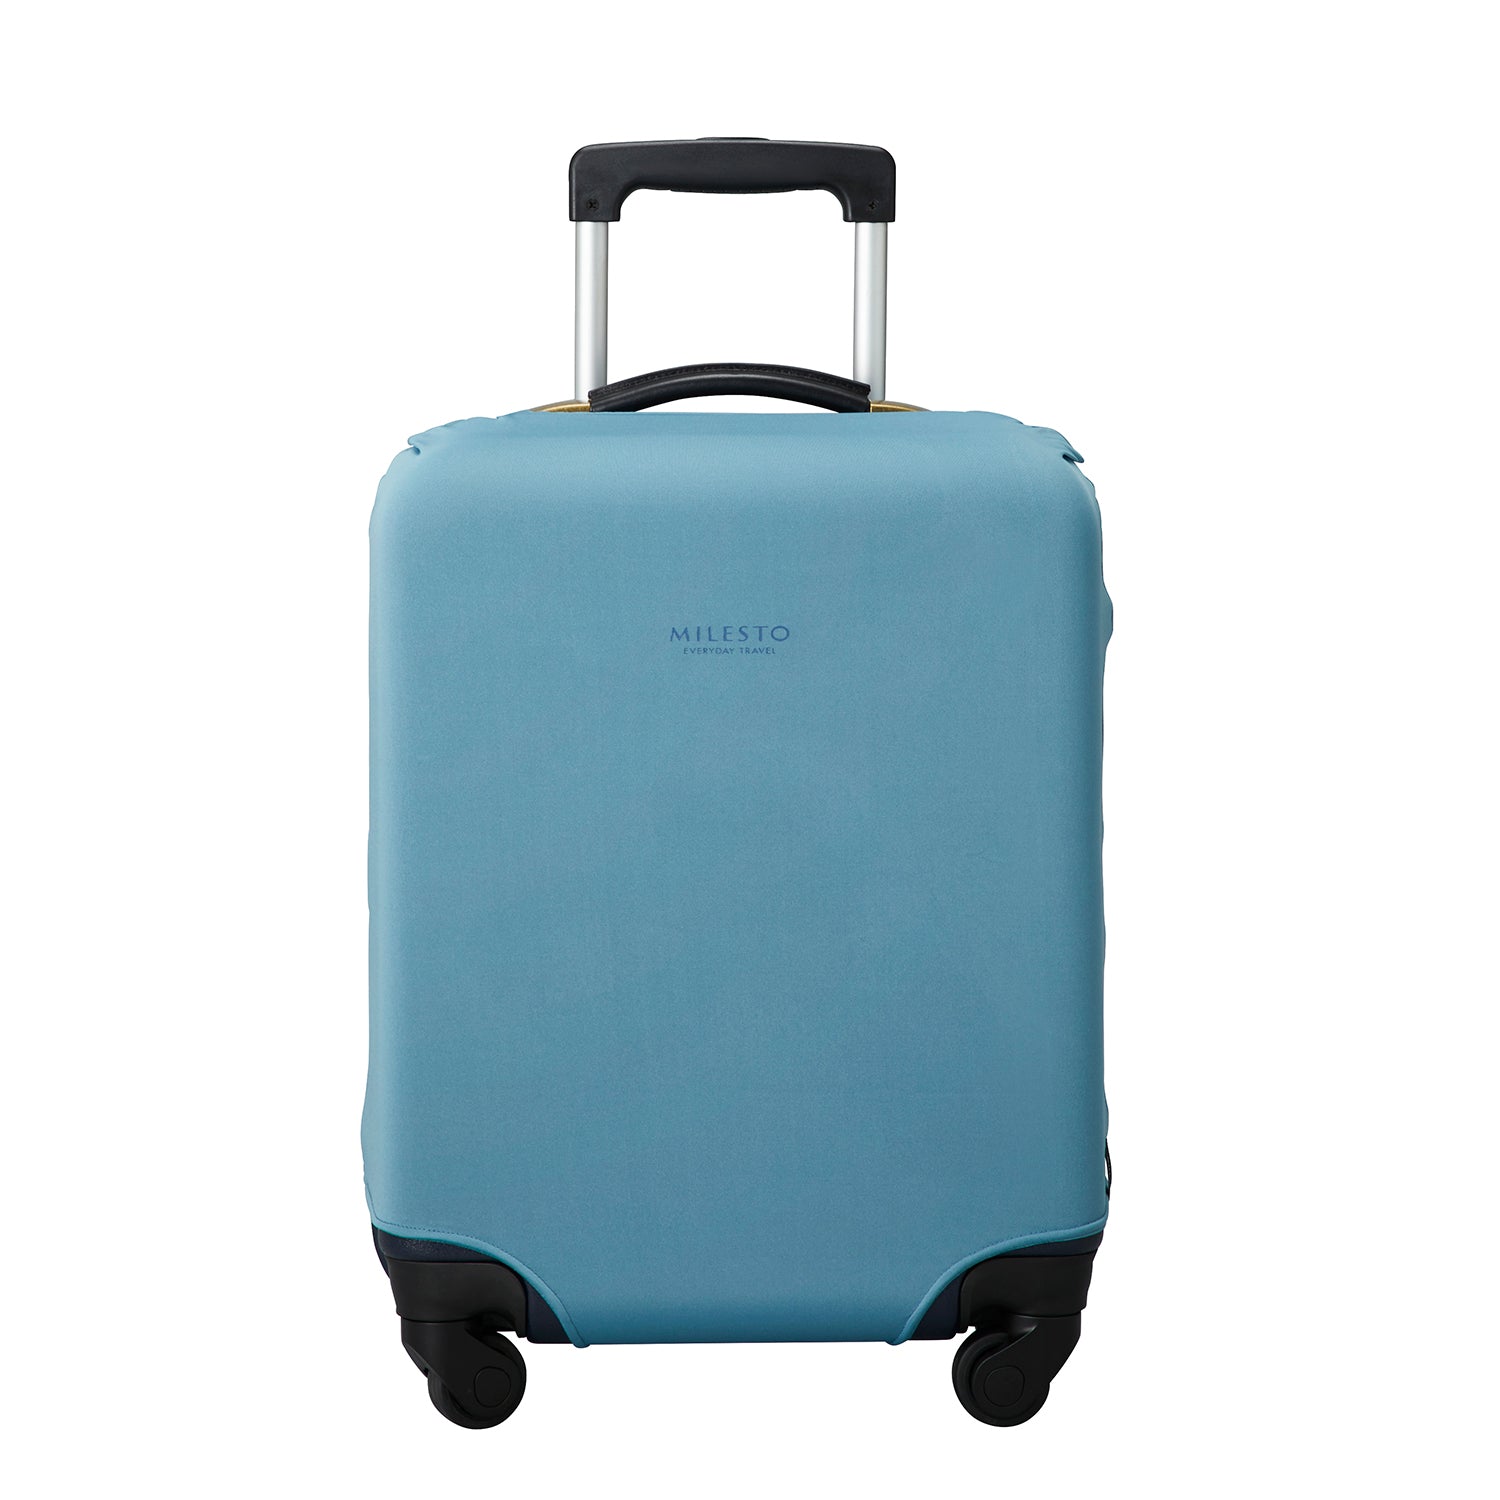 MILESTO UTILITY 可清洗式行李箱保護套 S - 藍灰色 MLS610-BLGY